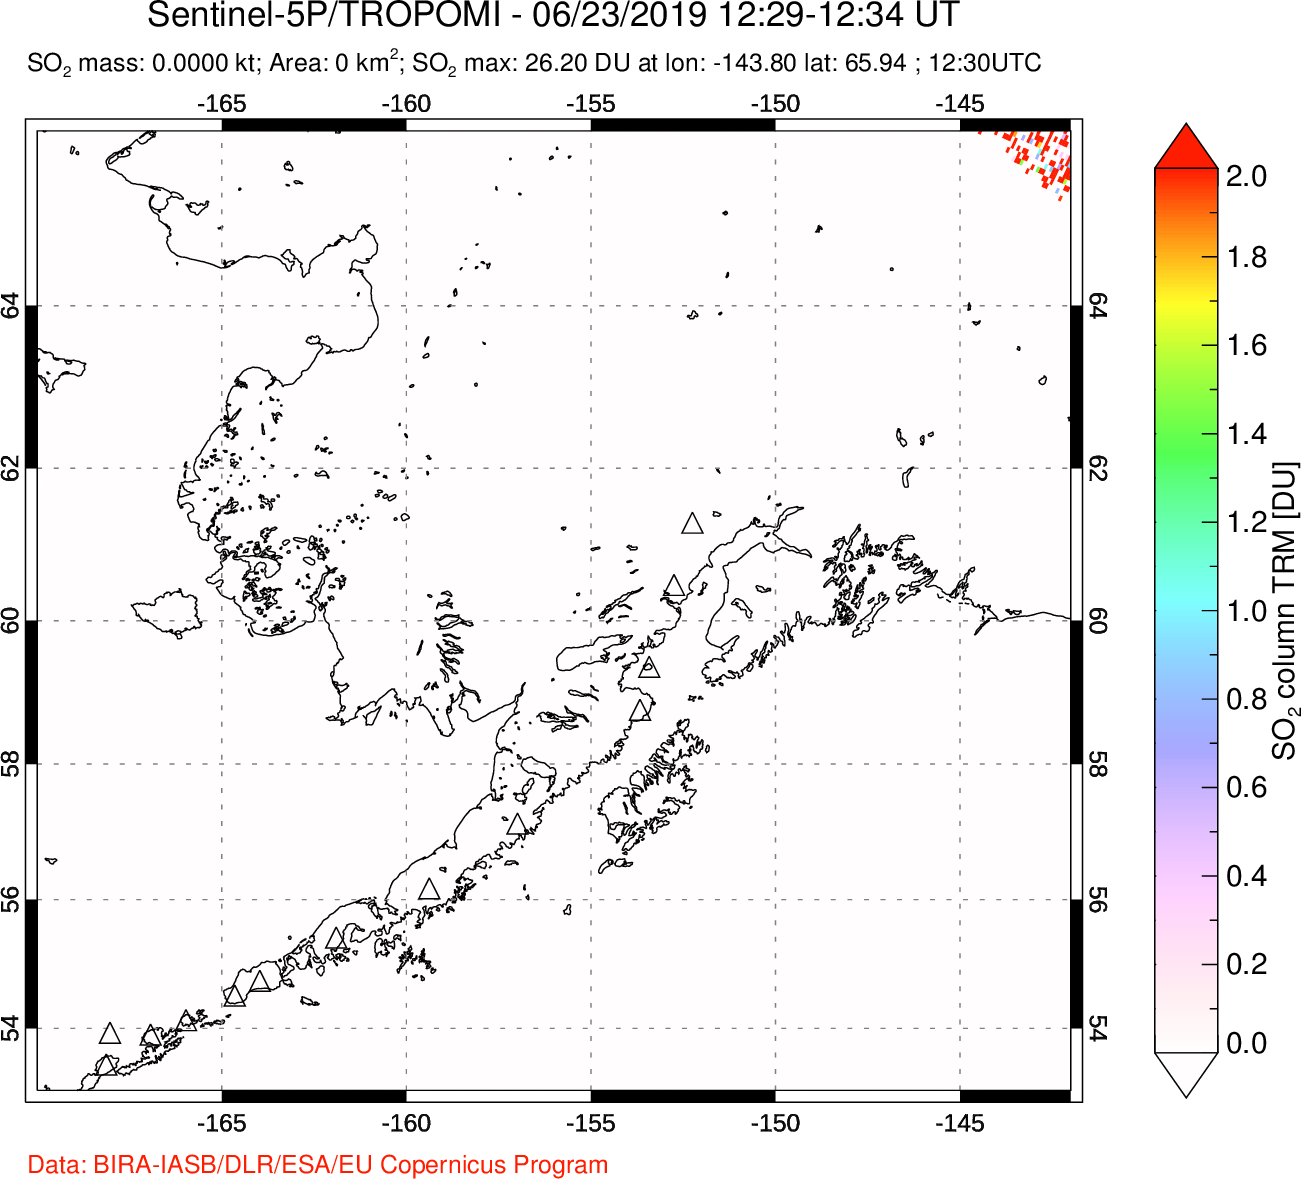 A sulfur dioxide image over Alaska, USA on Jun 23, 2019.